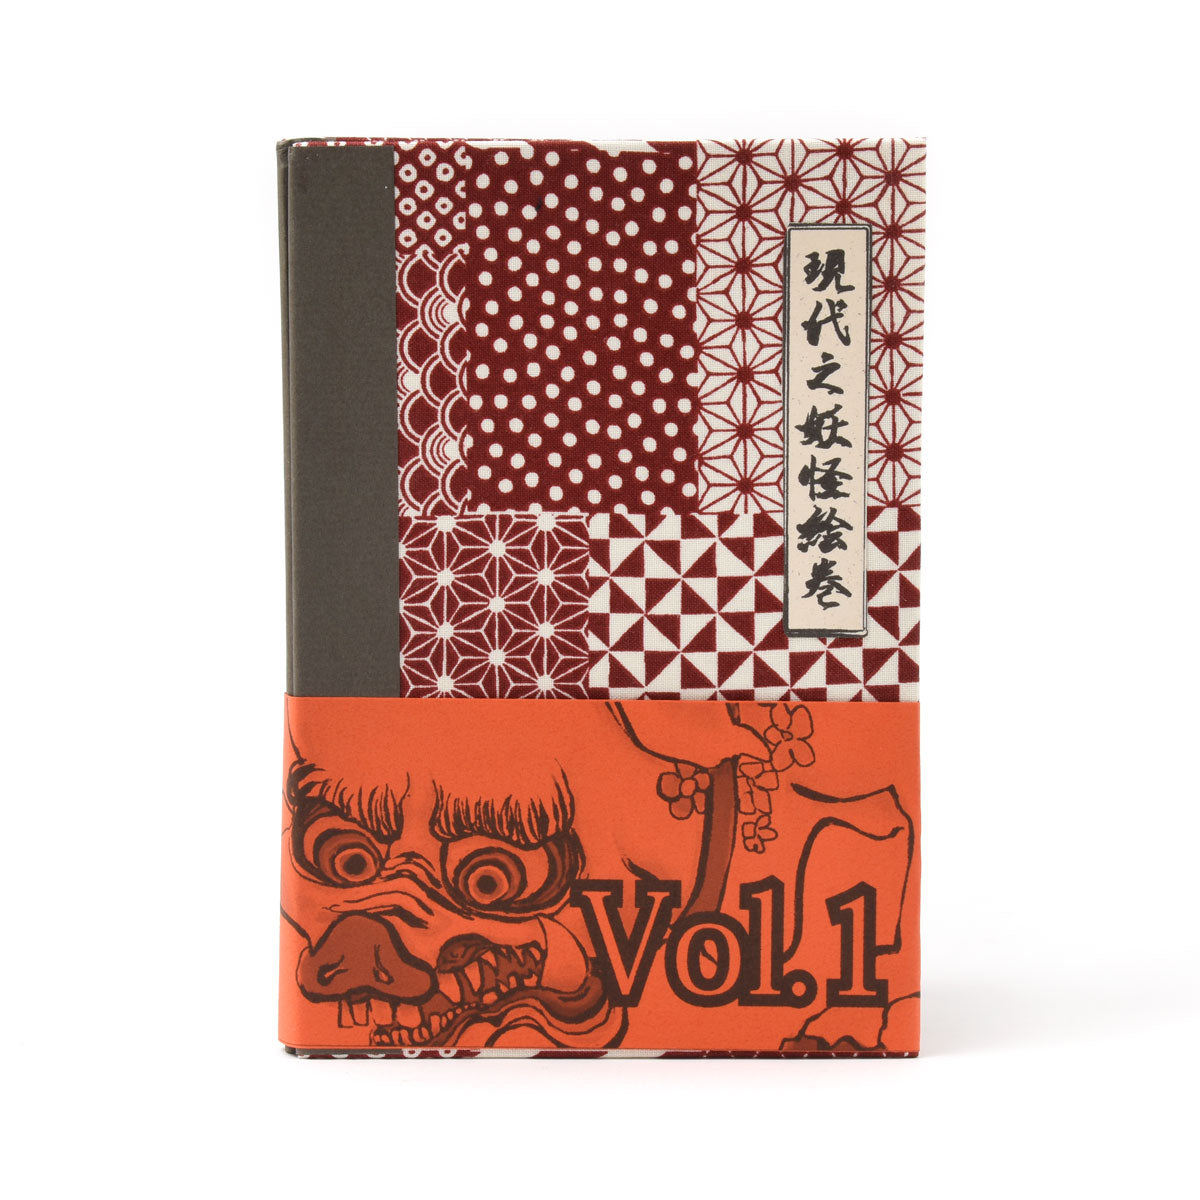 Yokai Volume One